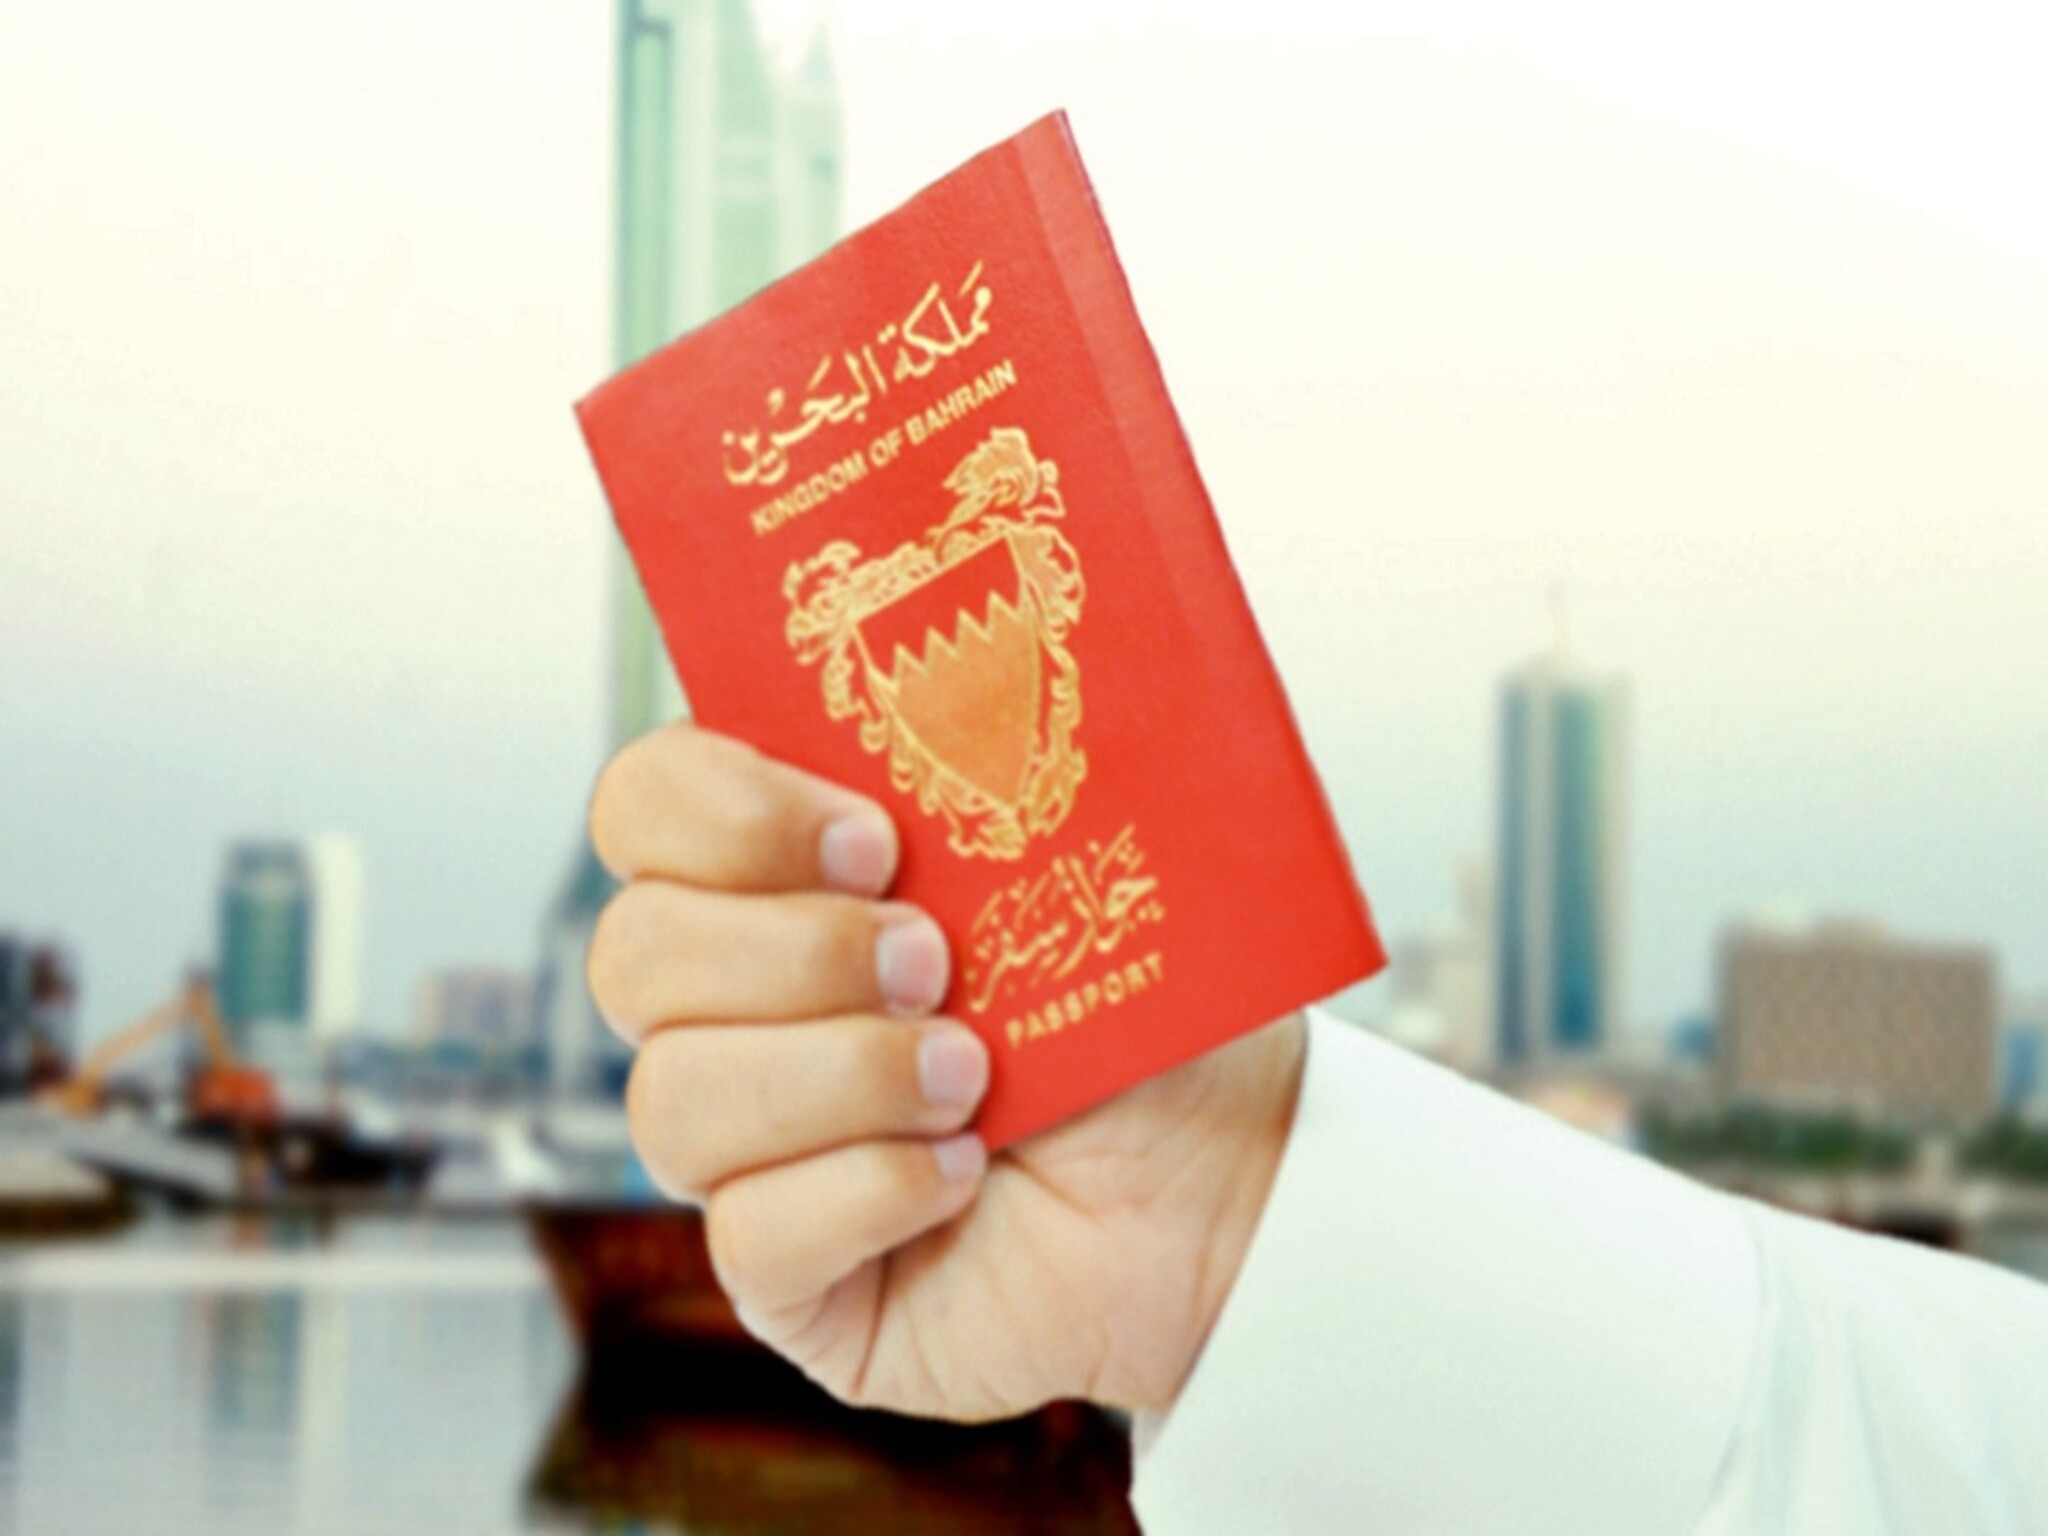 الجنسية والجوازات توفر خدمة إصدار بدل فاقد أو تالف للجواز داخل البحرين